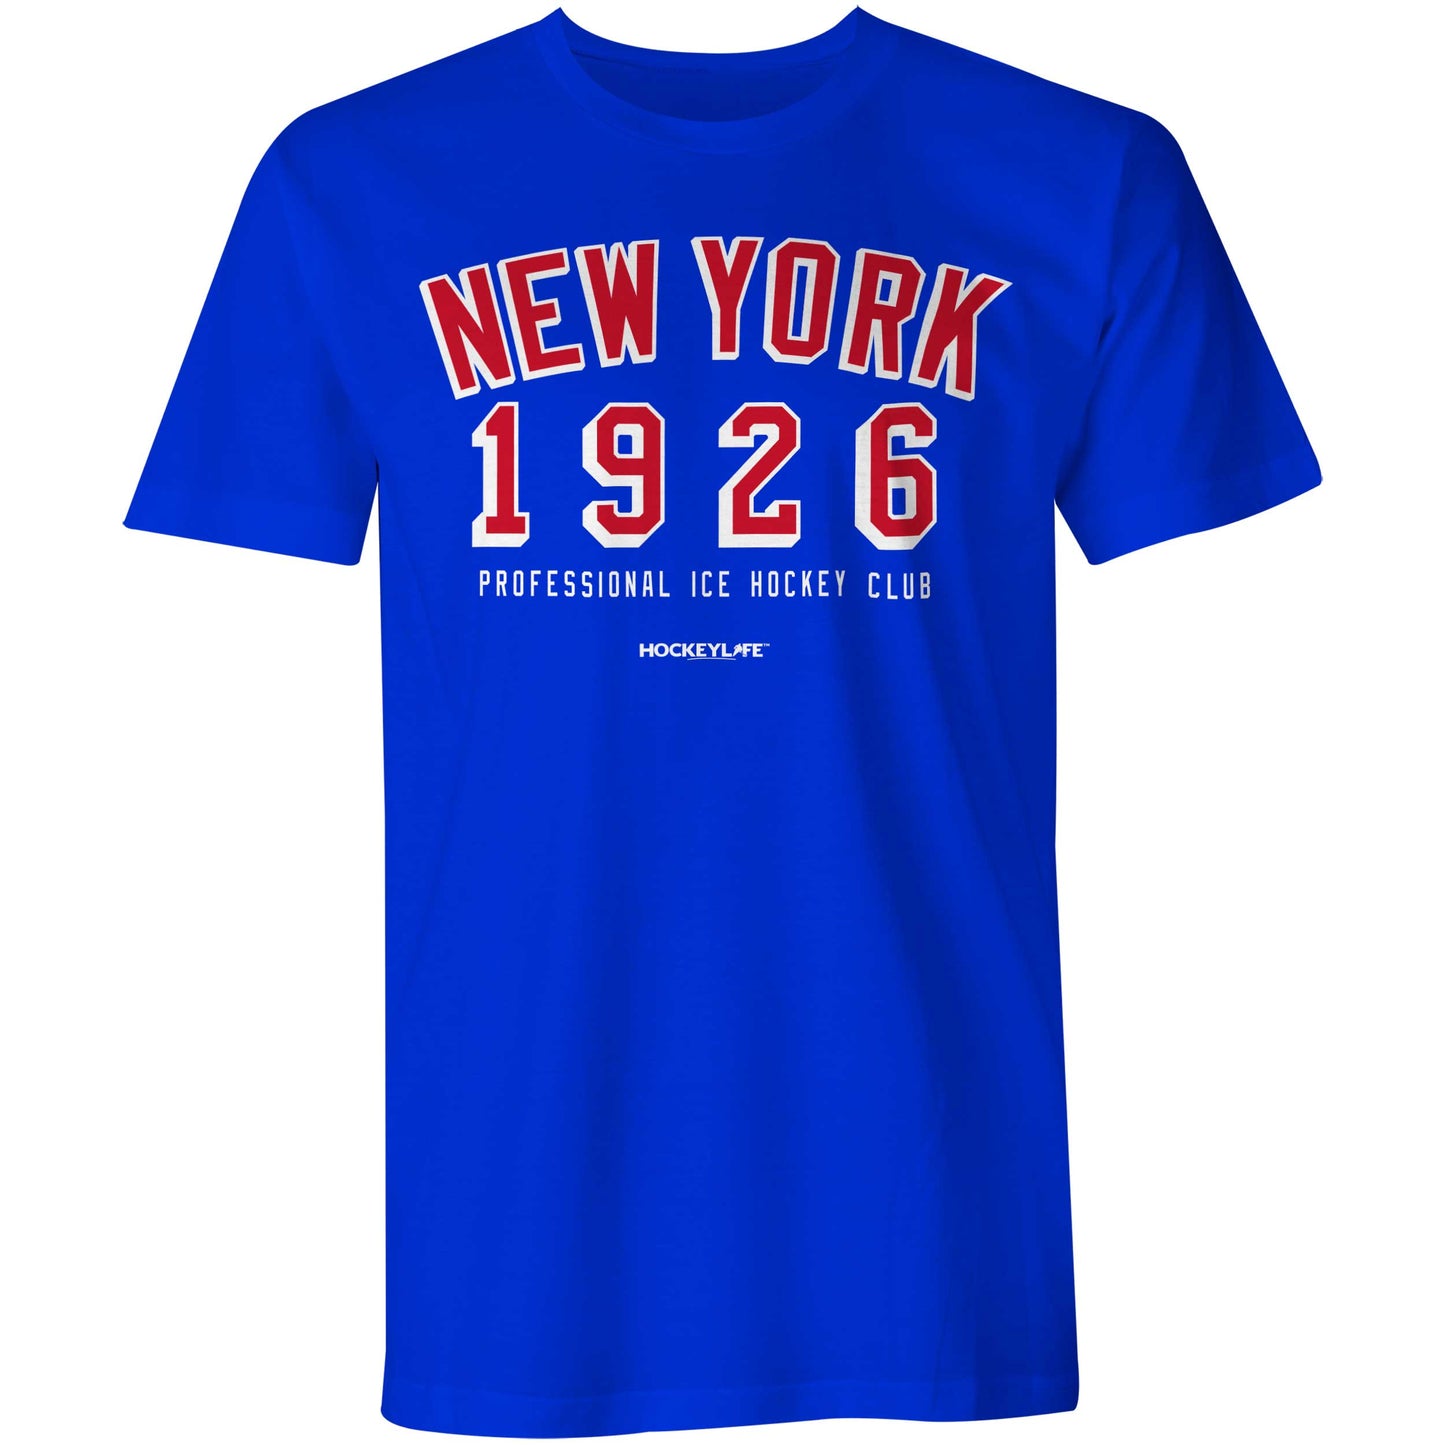 NYR Professional Hockey Club Tee Shirt (Royal Blue)